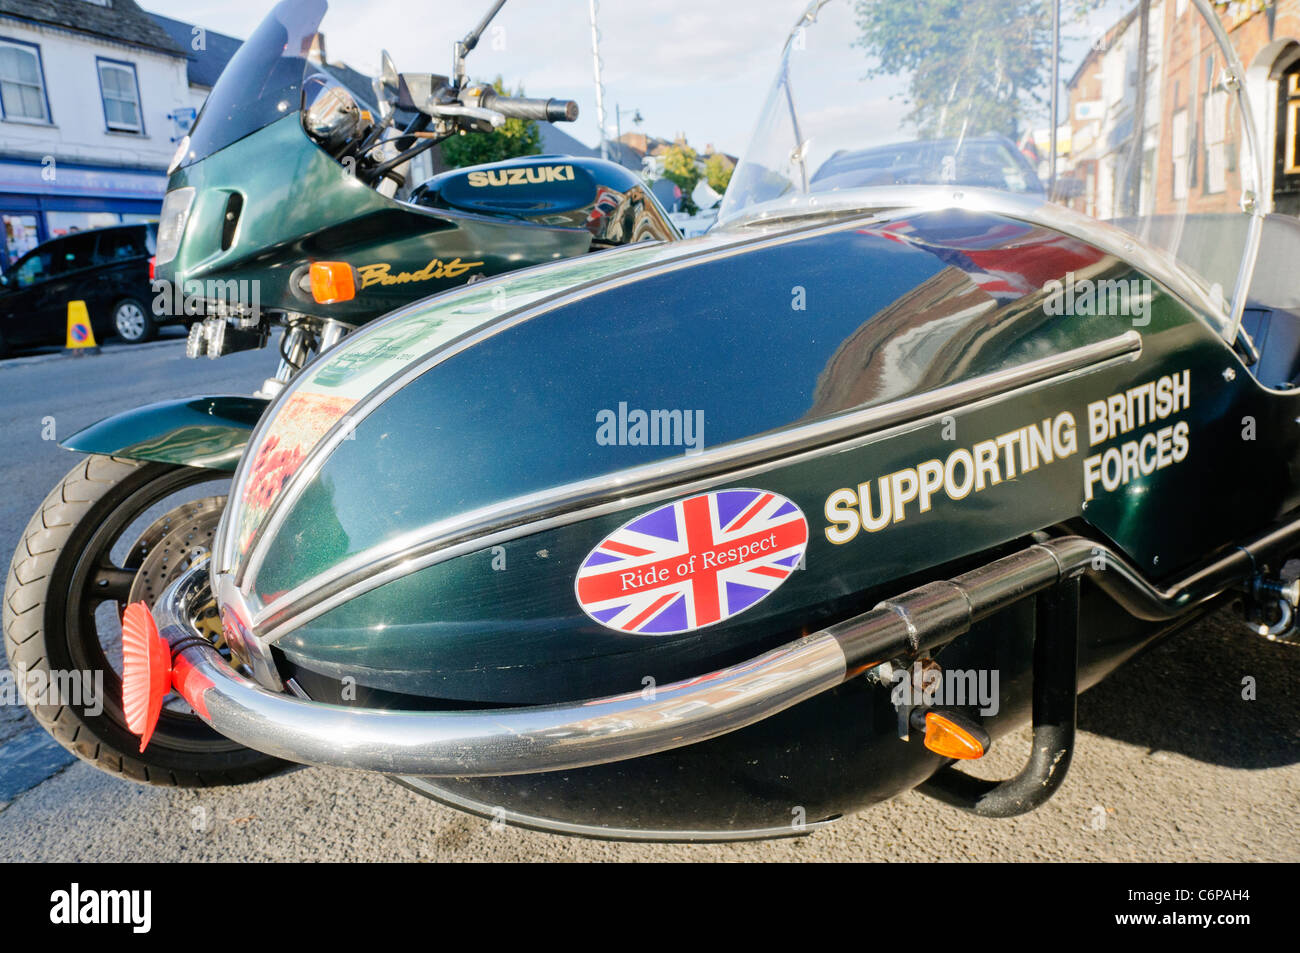 Et d'un side-car moto appartenant aux états de héros afghans, soutenir les troupes britanniques Banque D'Images